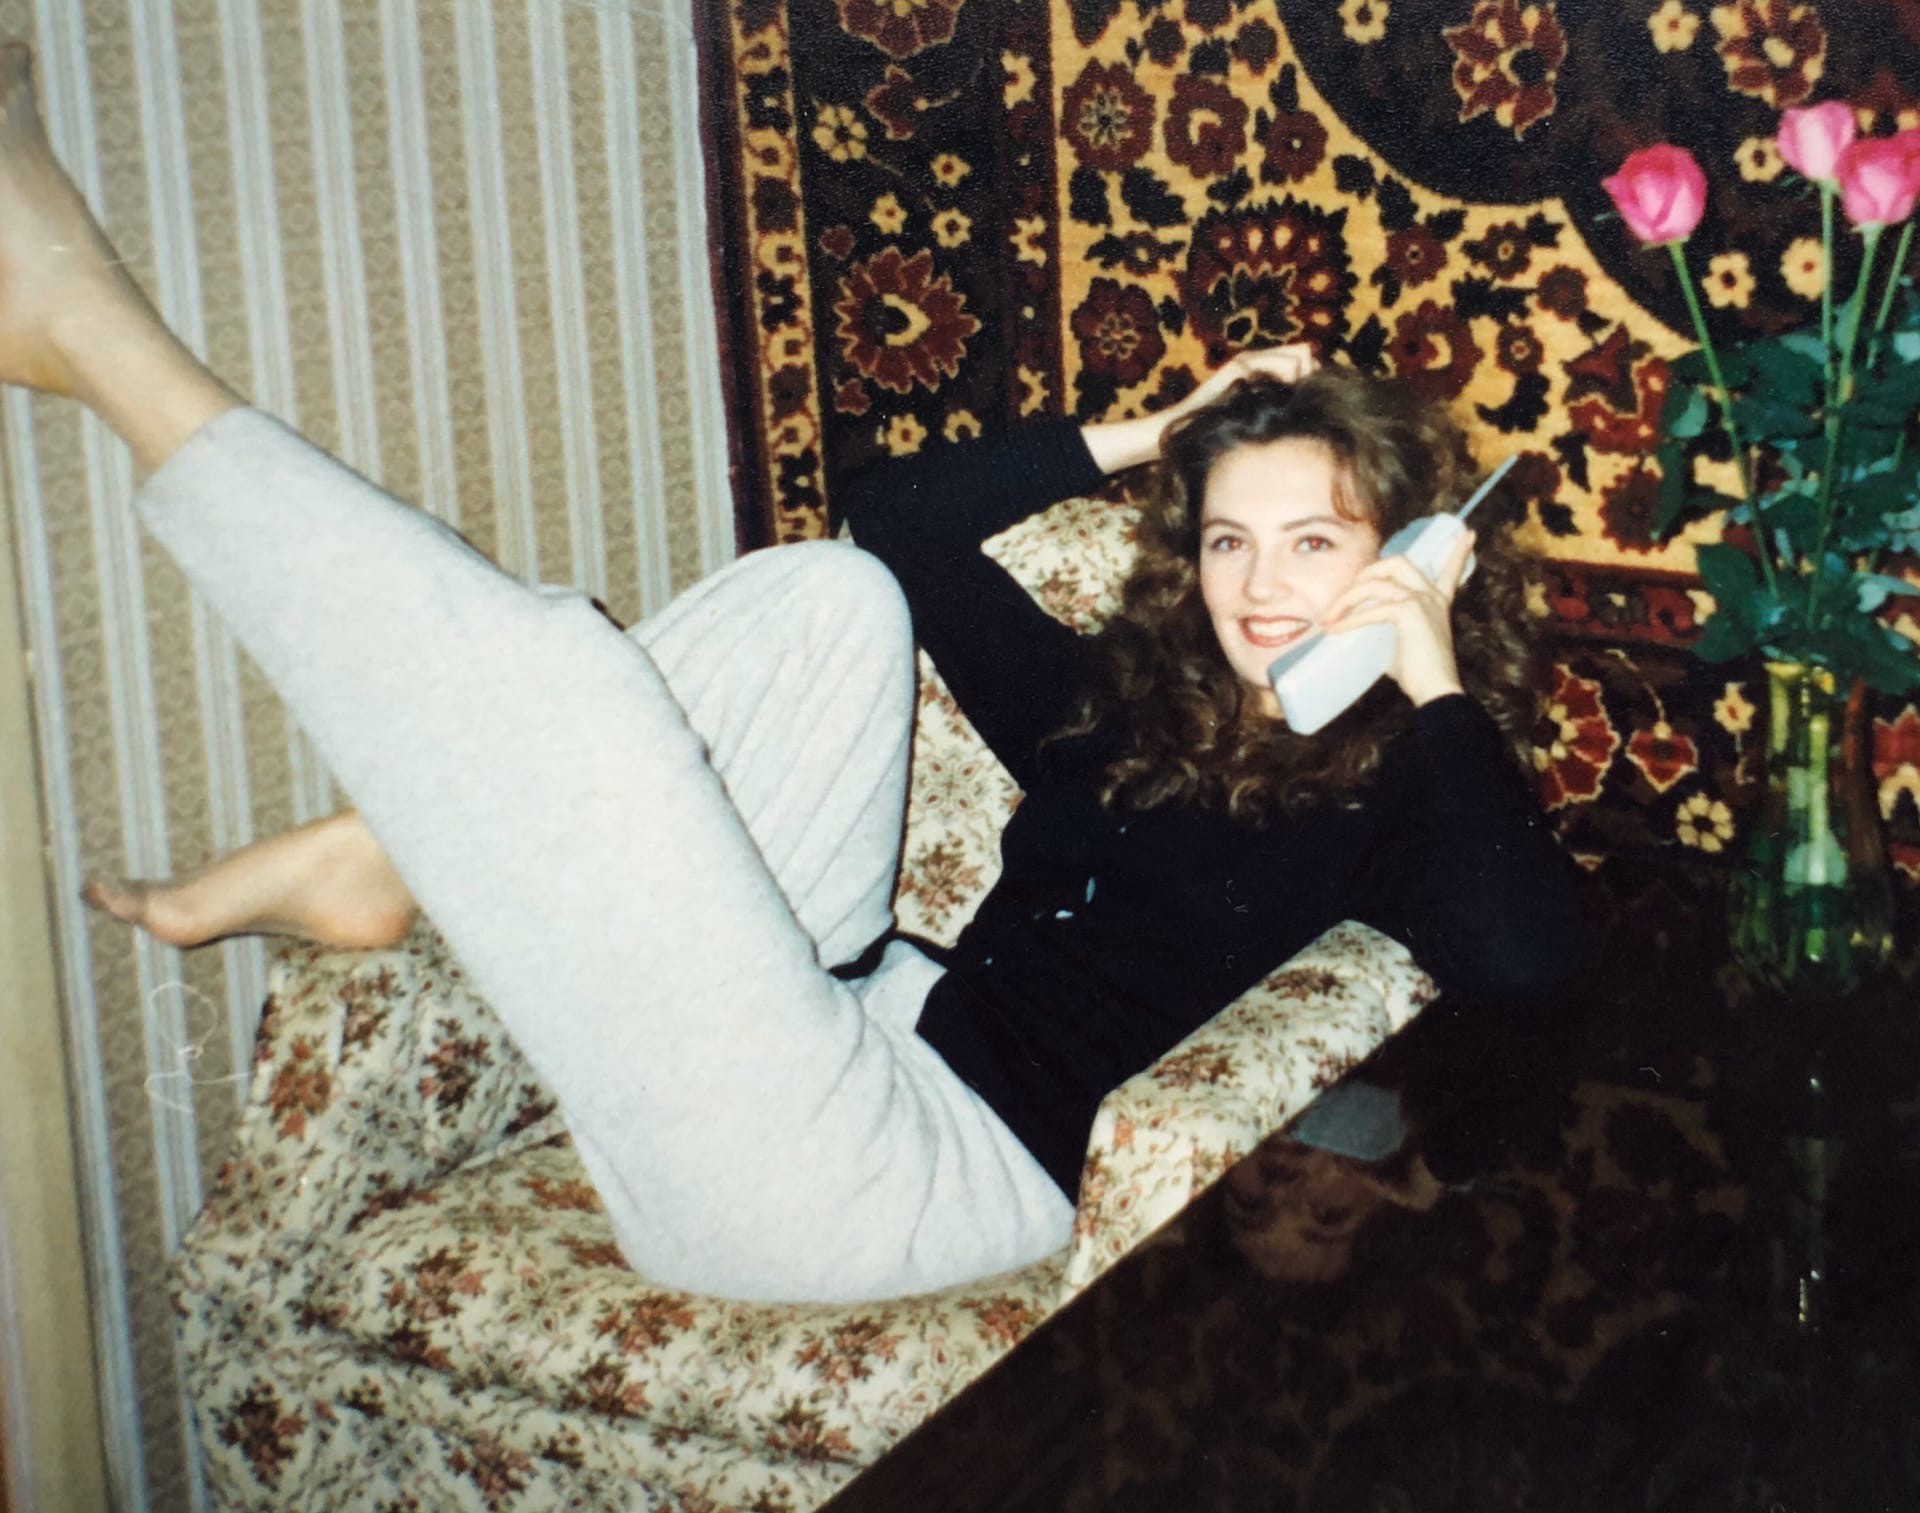 Фото голой девушки начала 90-х годов